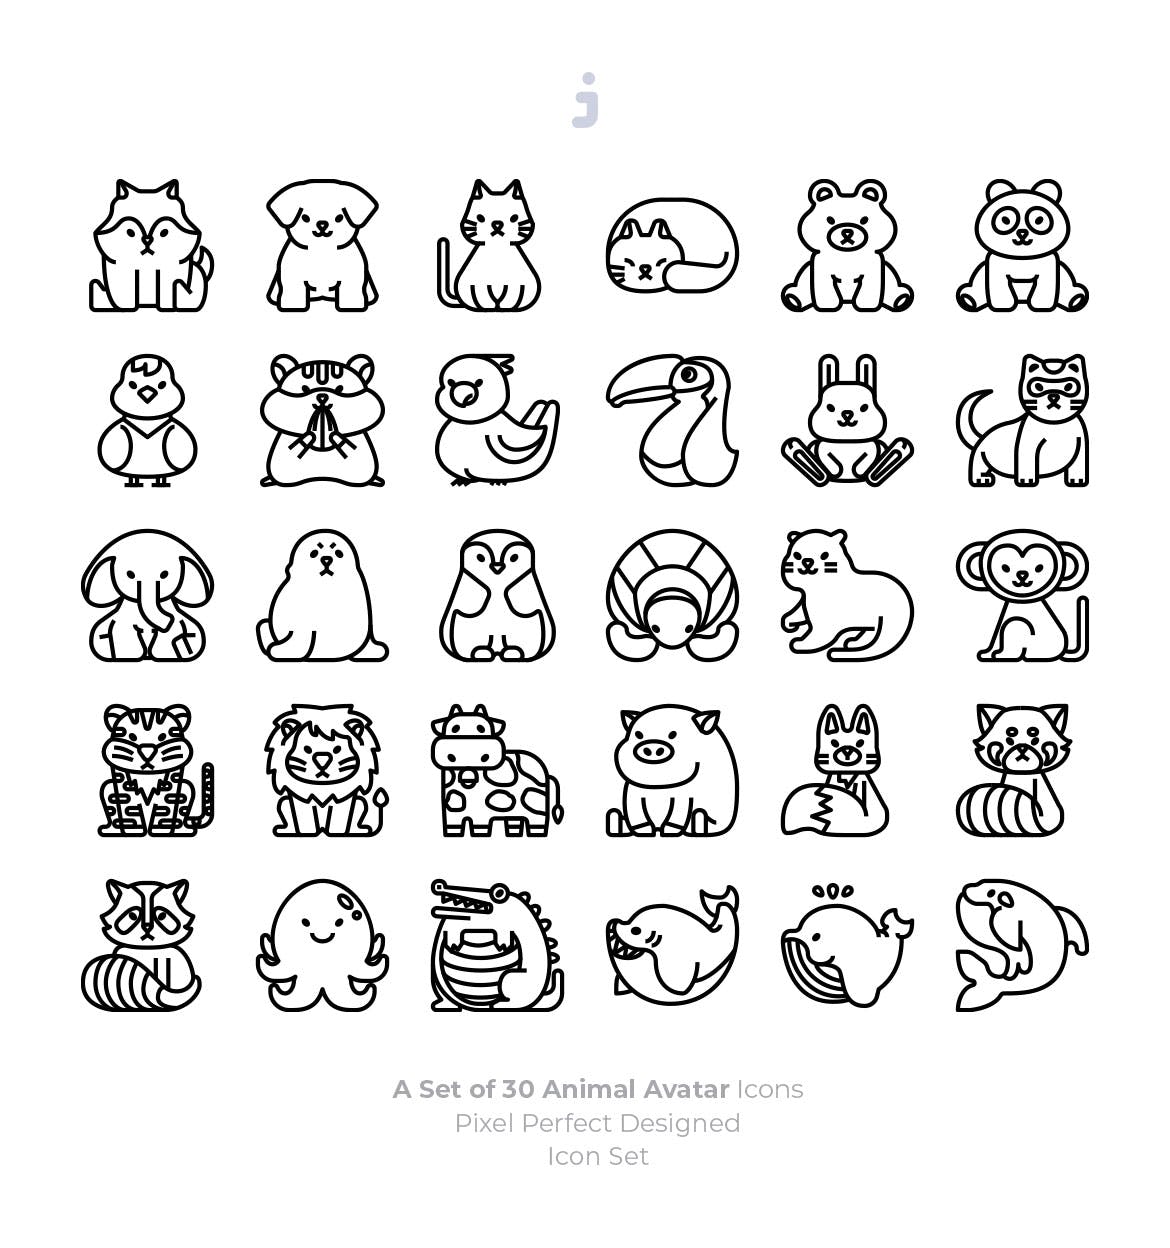 30个动物概念化图标源文件下载30 Animal Avatar Icons插图2